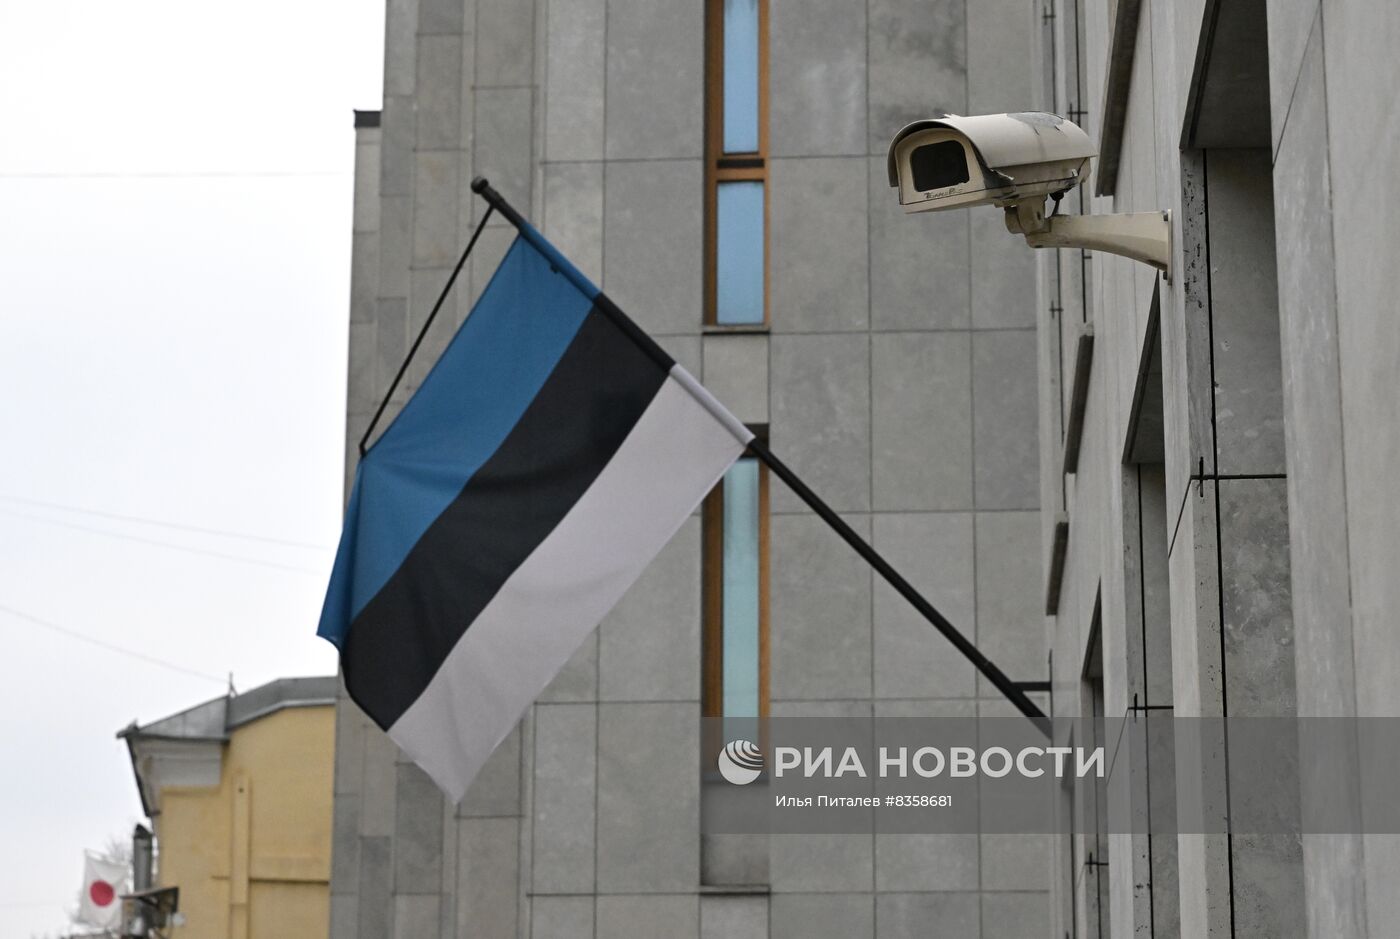 Посольство Эстонии в Москве